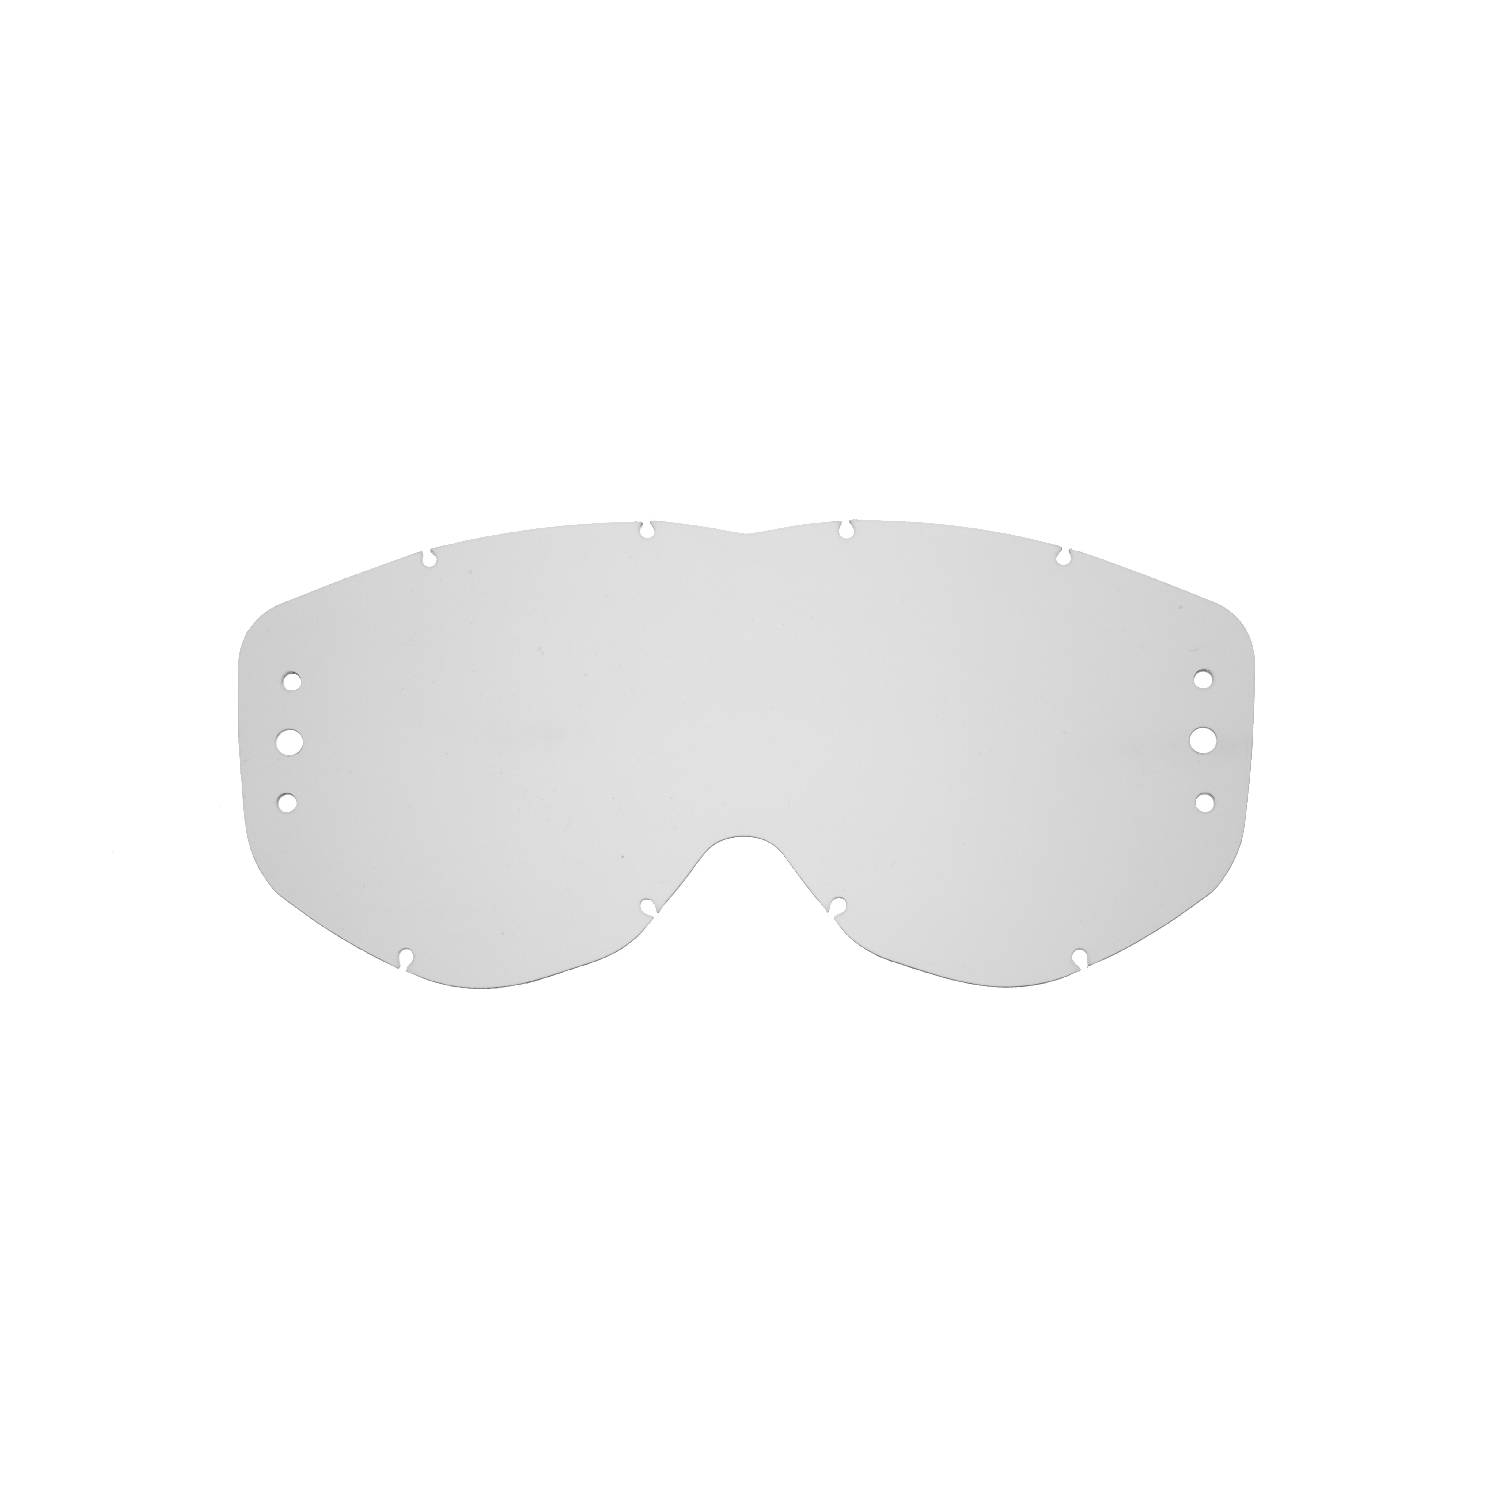 Lente di ricambio roll-off trasparente compatibile per occhiale/maschera Spy Magneto